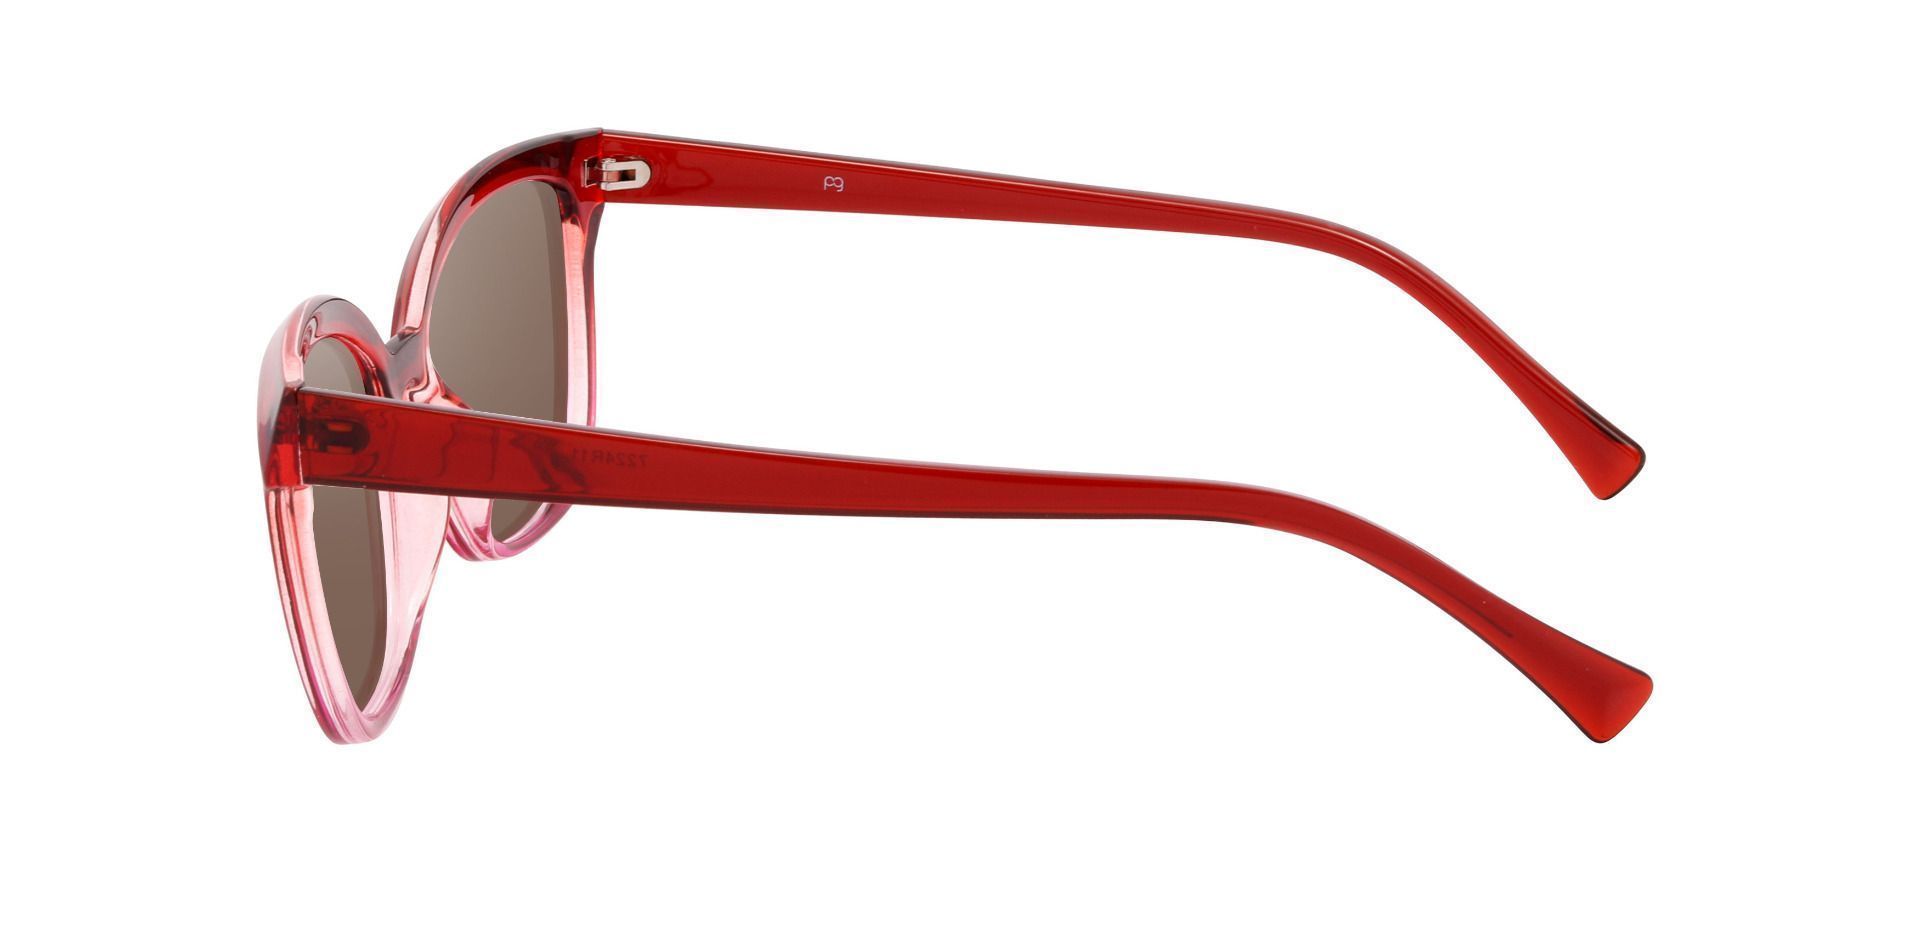 Nashville Cat Eye Prescription Sunglasses - Red Frame With Brown Lenses